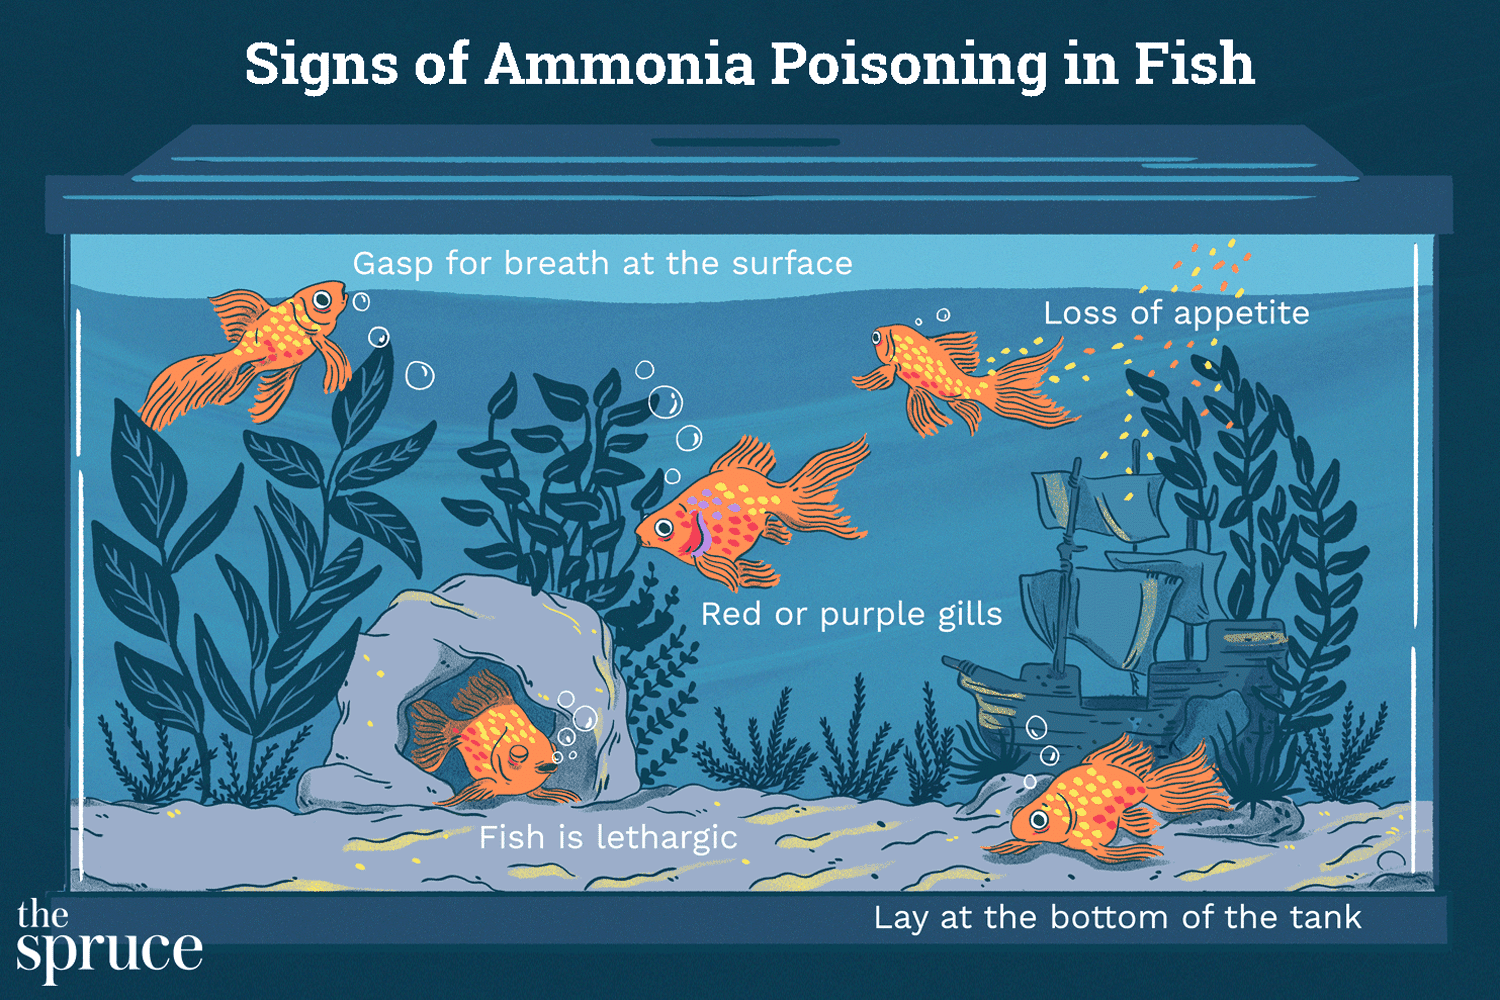 Como tratar o envenenamento por amônia em peixes de aquário